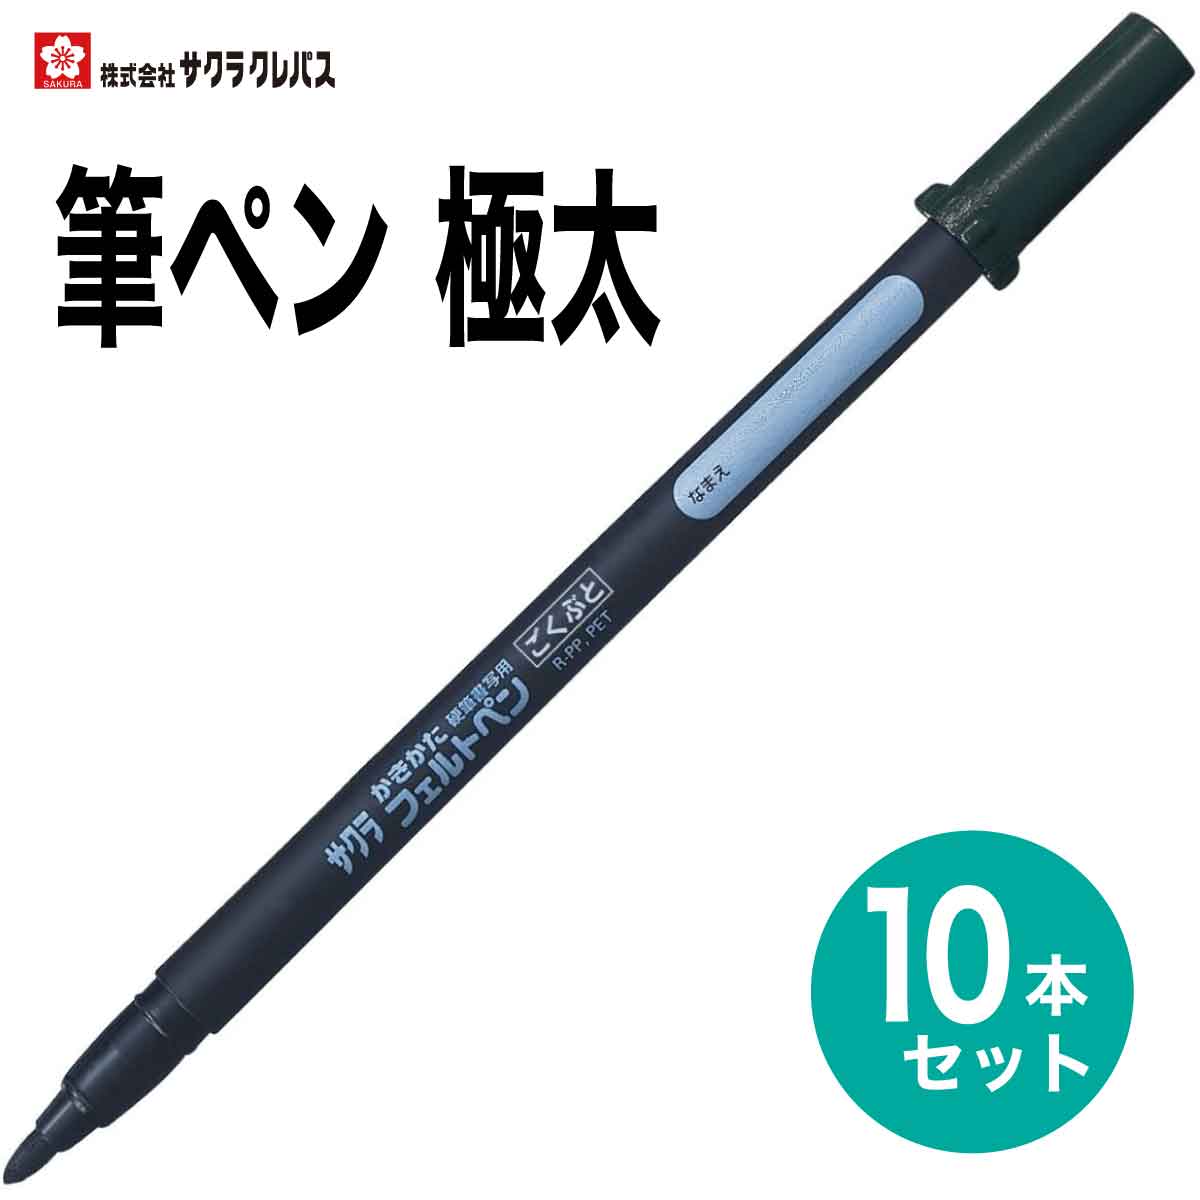 サクラクレパス 10本セット 筆ペン かきかたフェルトペン 極太 黒 FK-J 硬筆書写用 書き初め 書道 年賀状 SAKURA Calligraphy Brush pen